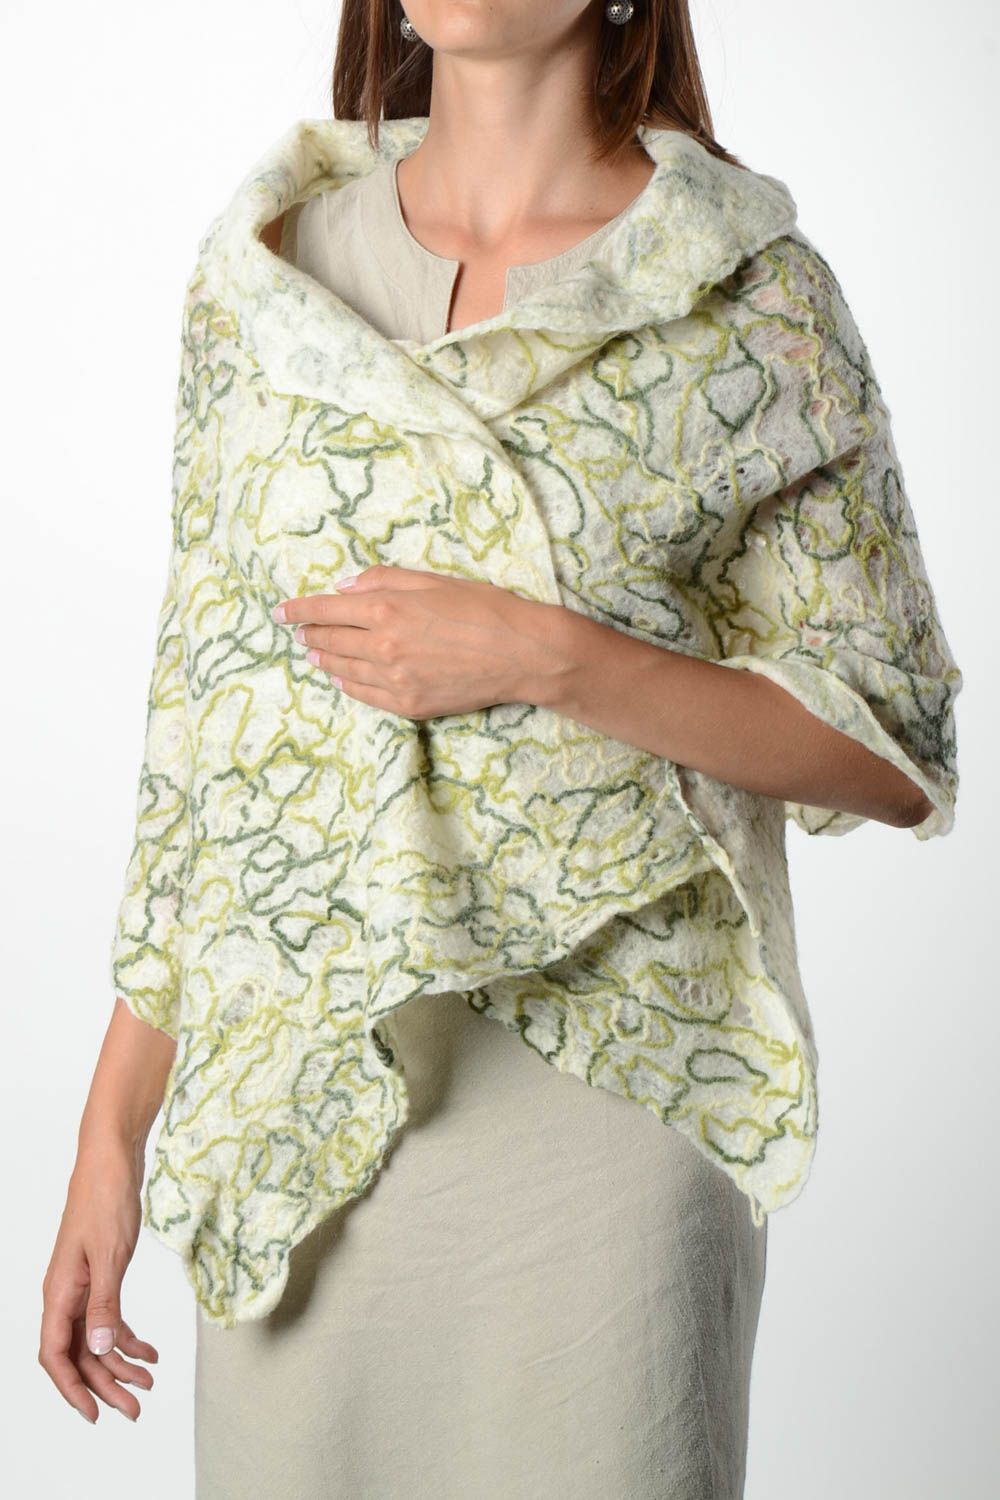 Handmade gefilzter Schal Frauen Accessoire Geschenk für Frau Damen Schal hell foto 1